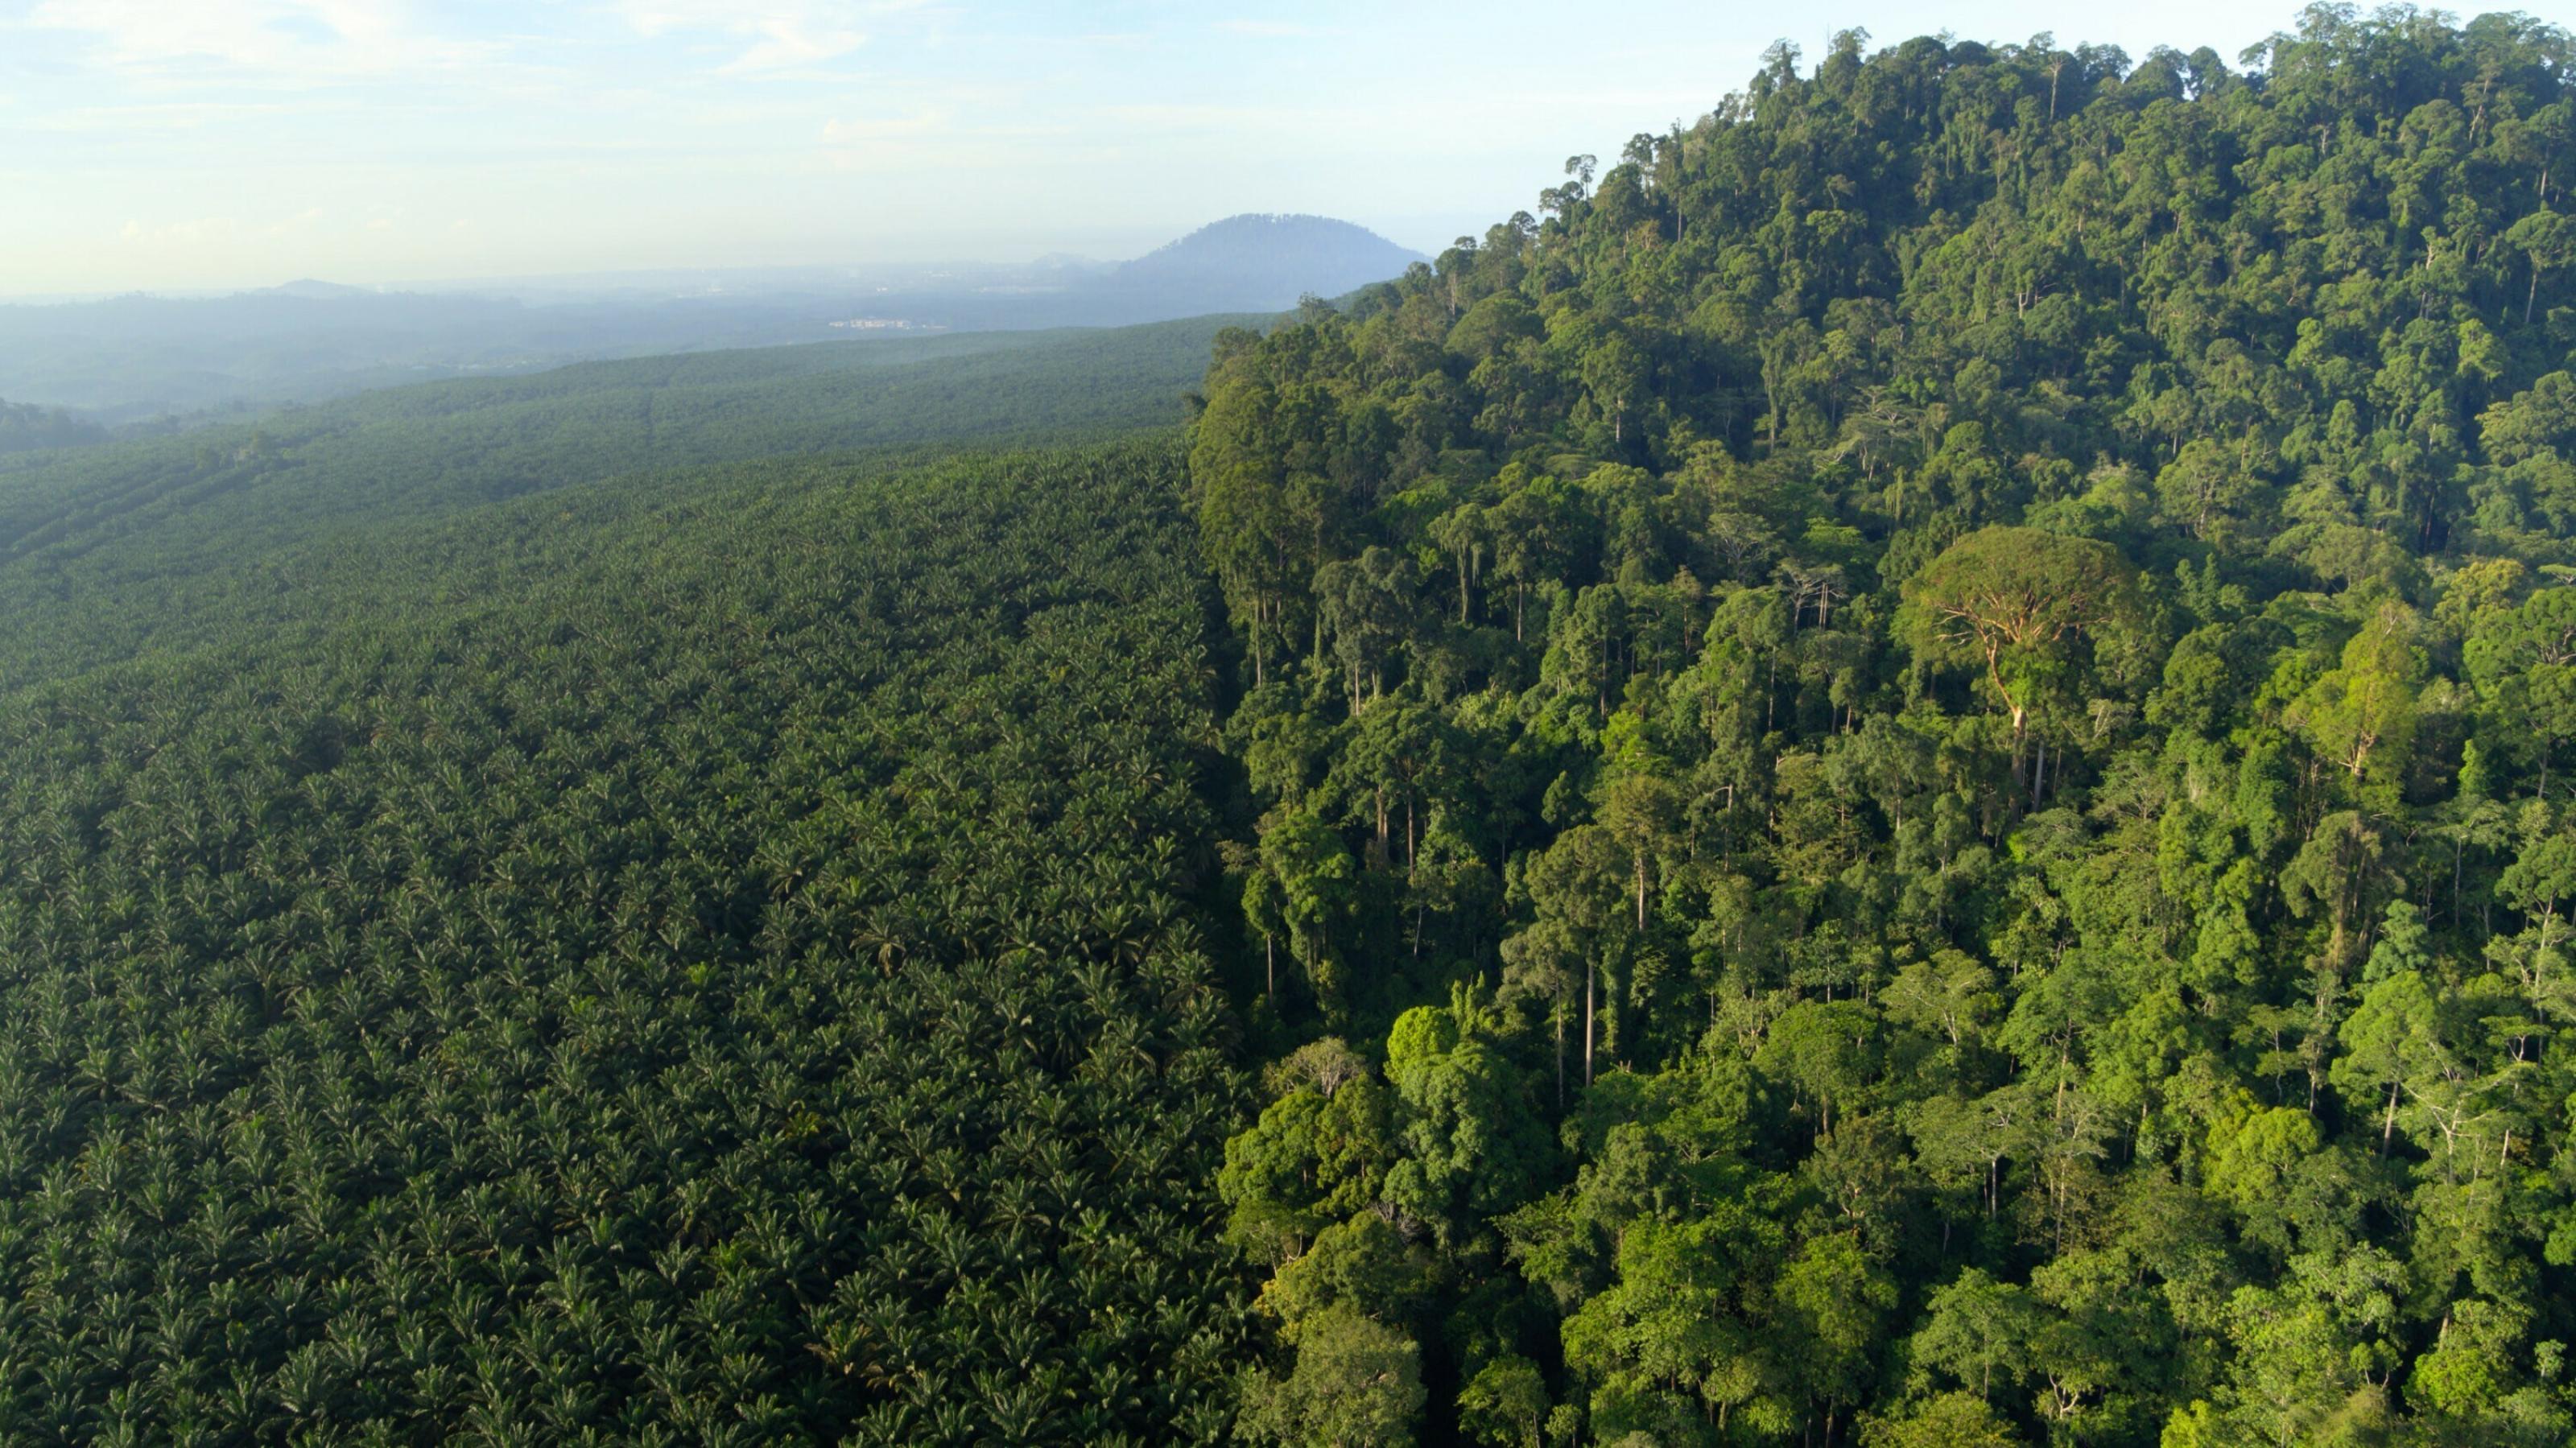 Das Bild ist in zwei scharfe Hälften geteilt, links eine industrielle Palmölplantage, rechts tropischer Regenwald.